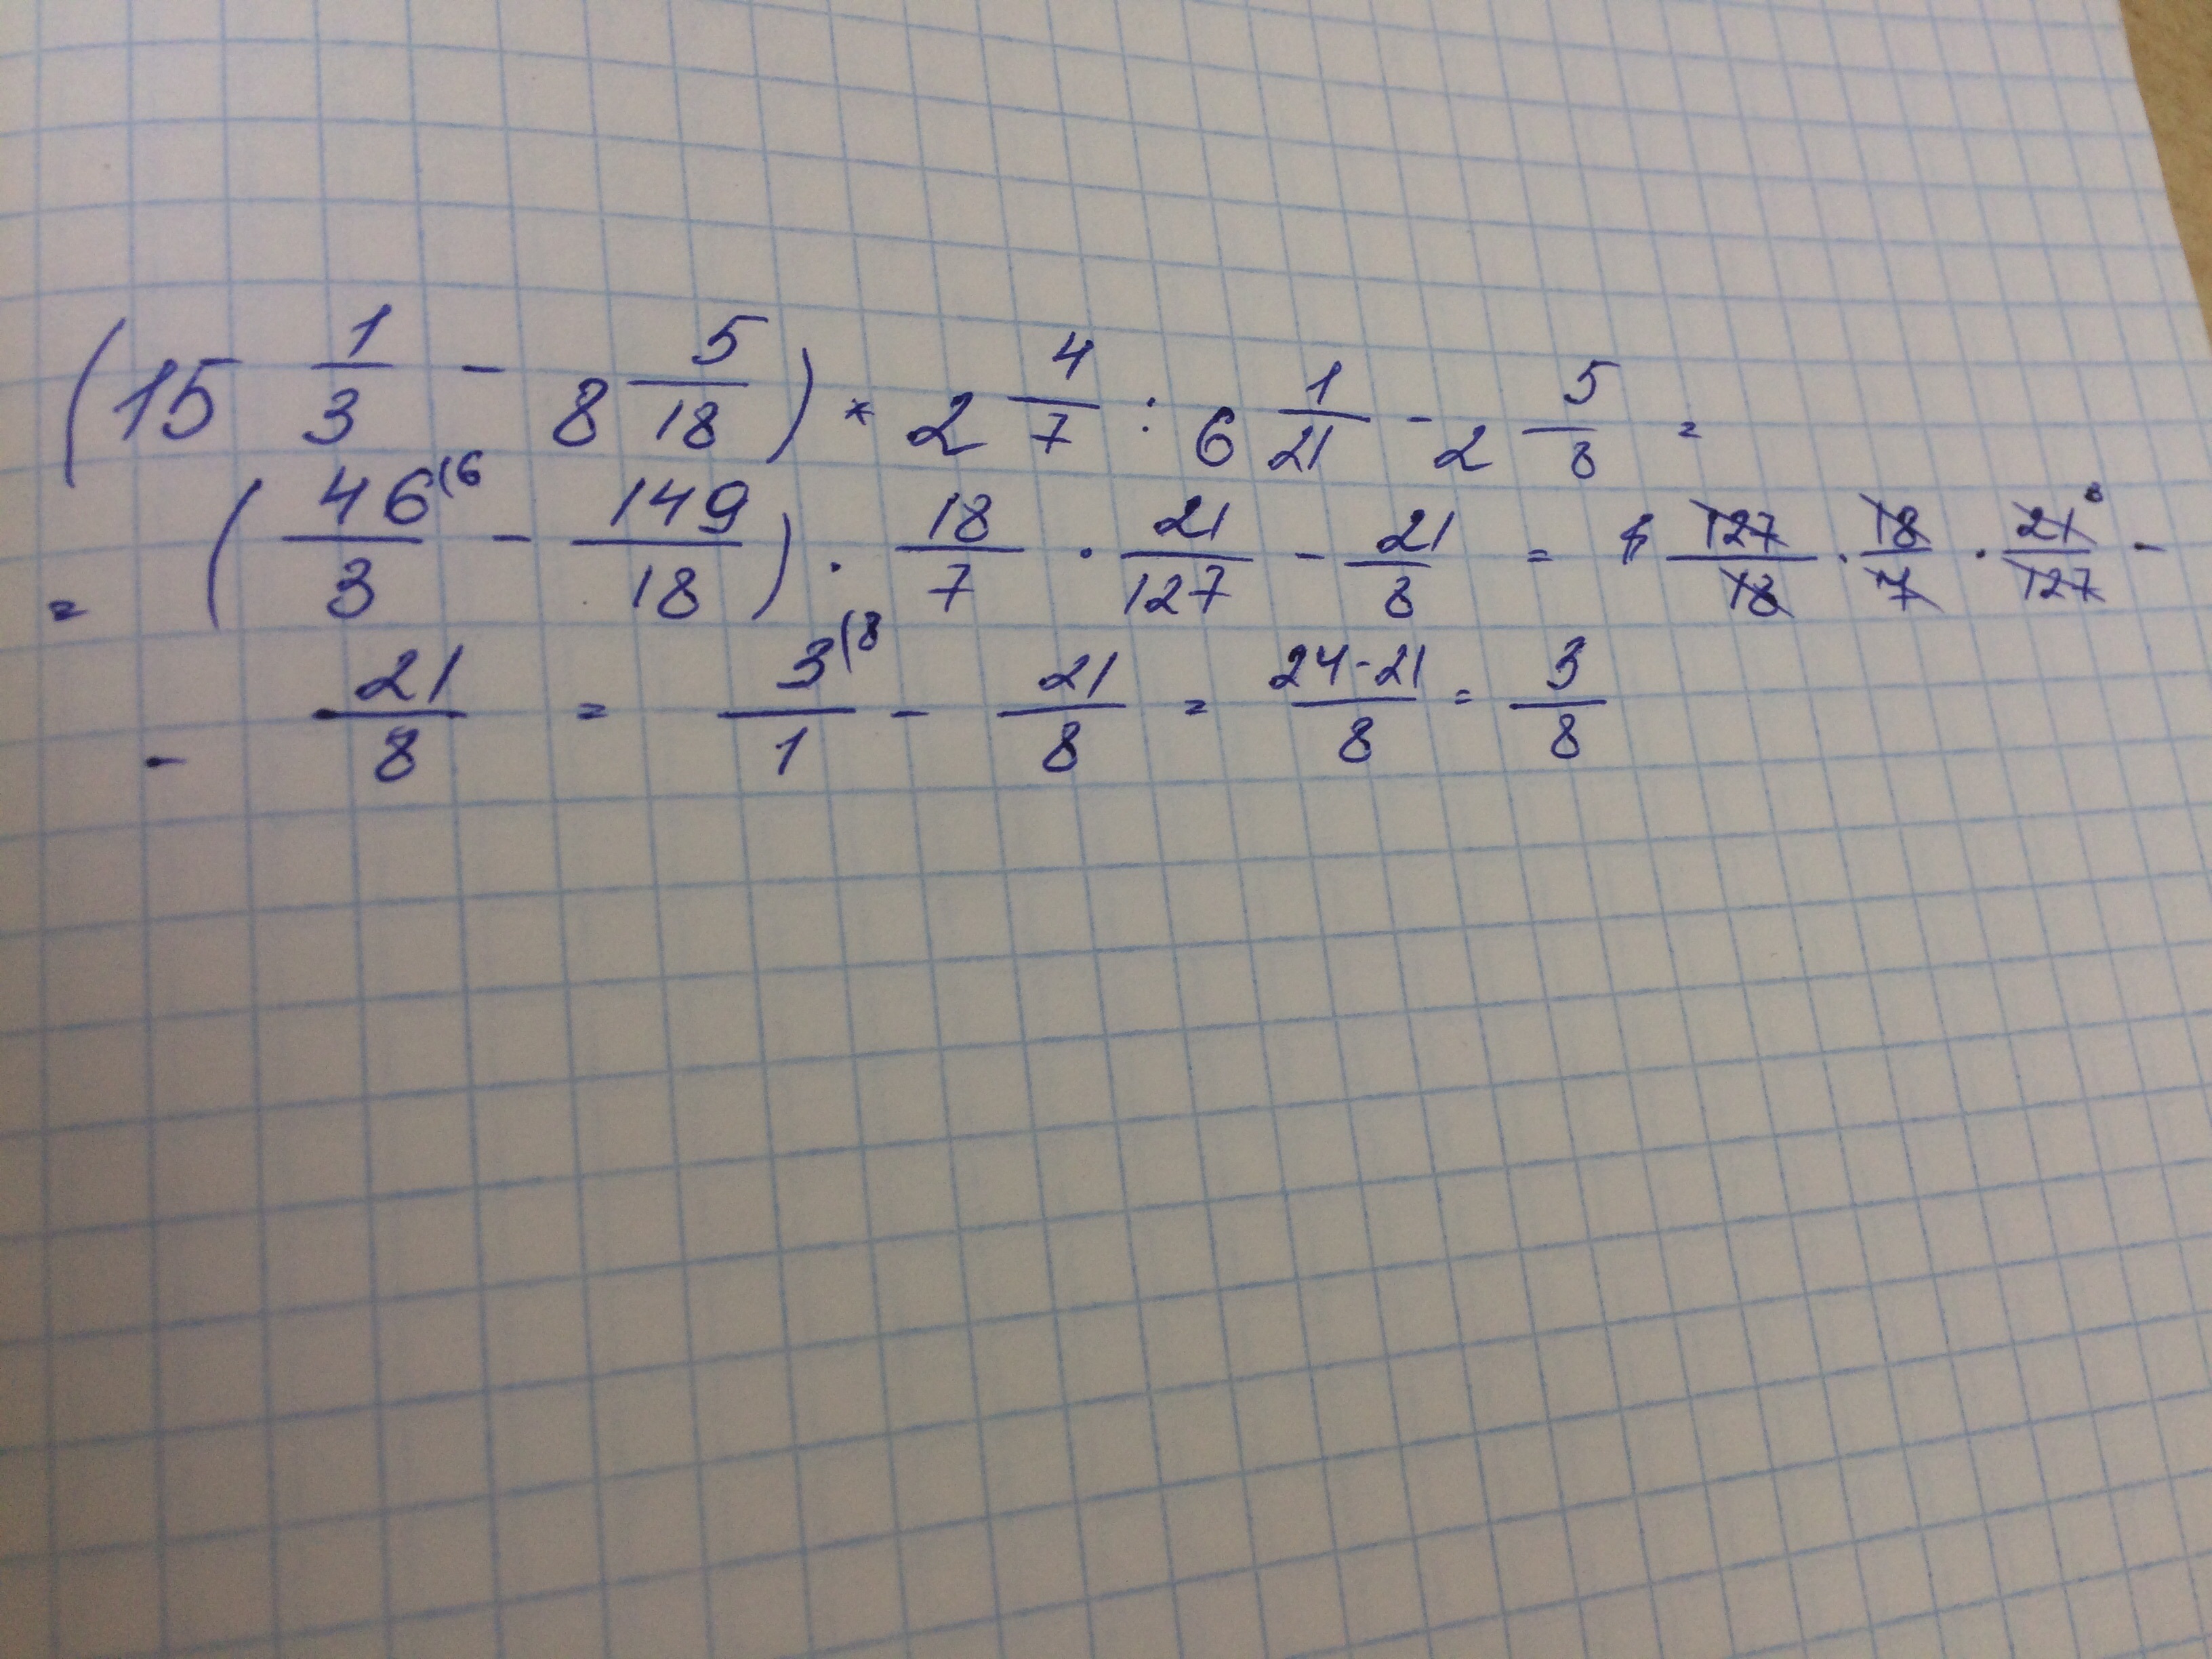 15 3 поделить на 5. Решить пример 15 целых 1/2. Реши пример :(2 целых1/6 -3 целых1/4): 2 целых 3/5 + 2/3 • 2 целых 1/4 - 5 целых 1/6. 2целых7. Реши пример 9 разделить на 2 целых 2/5.